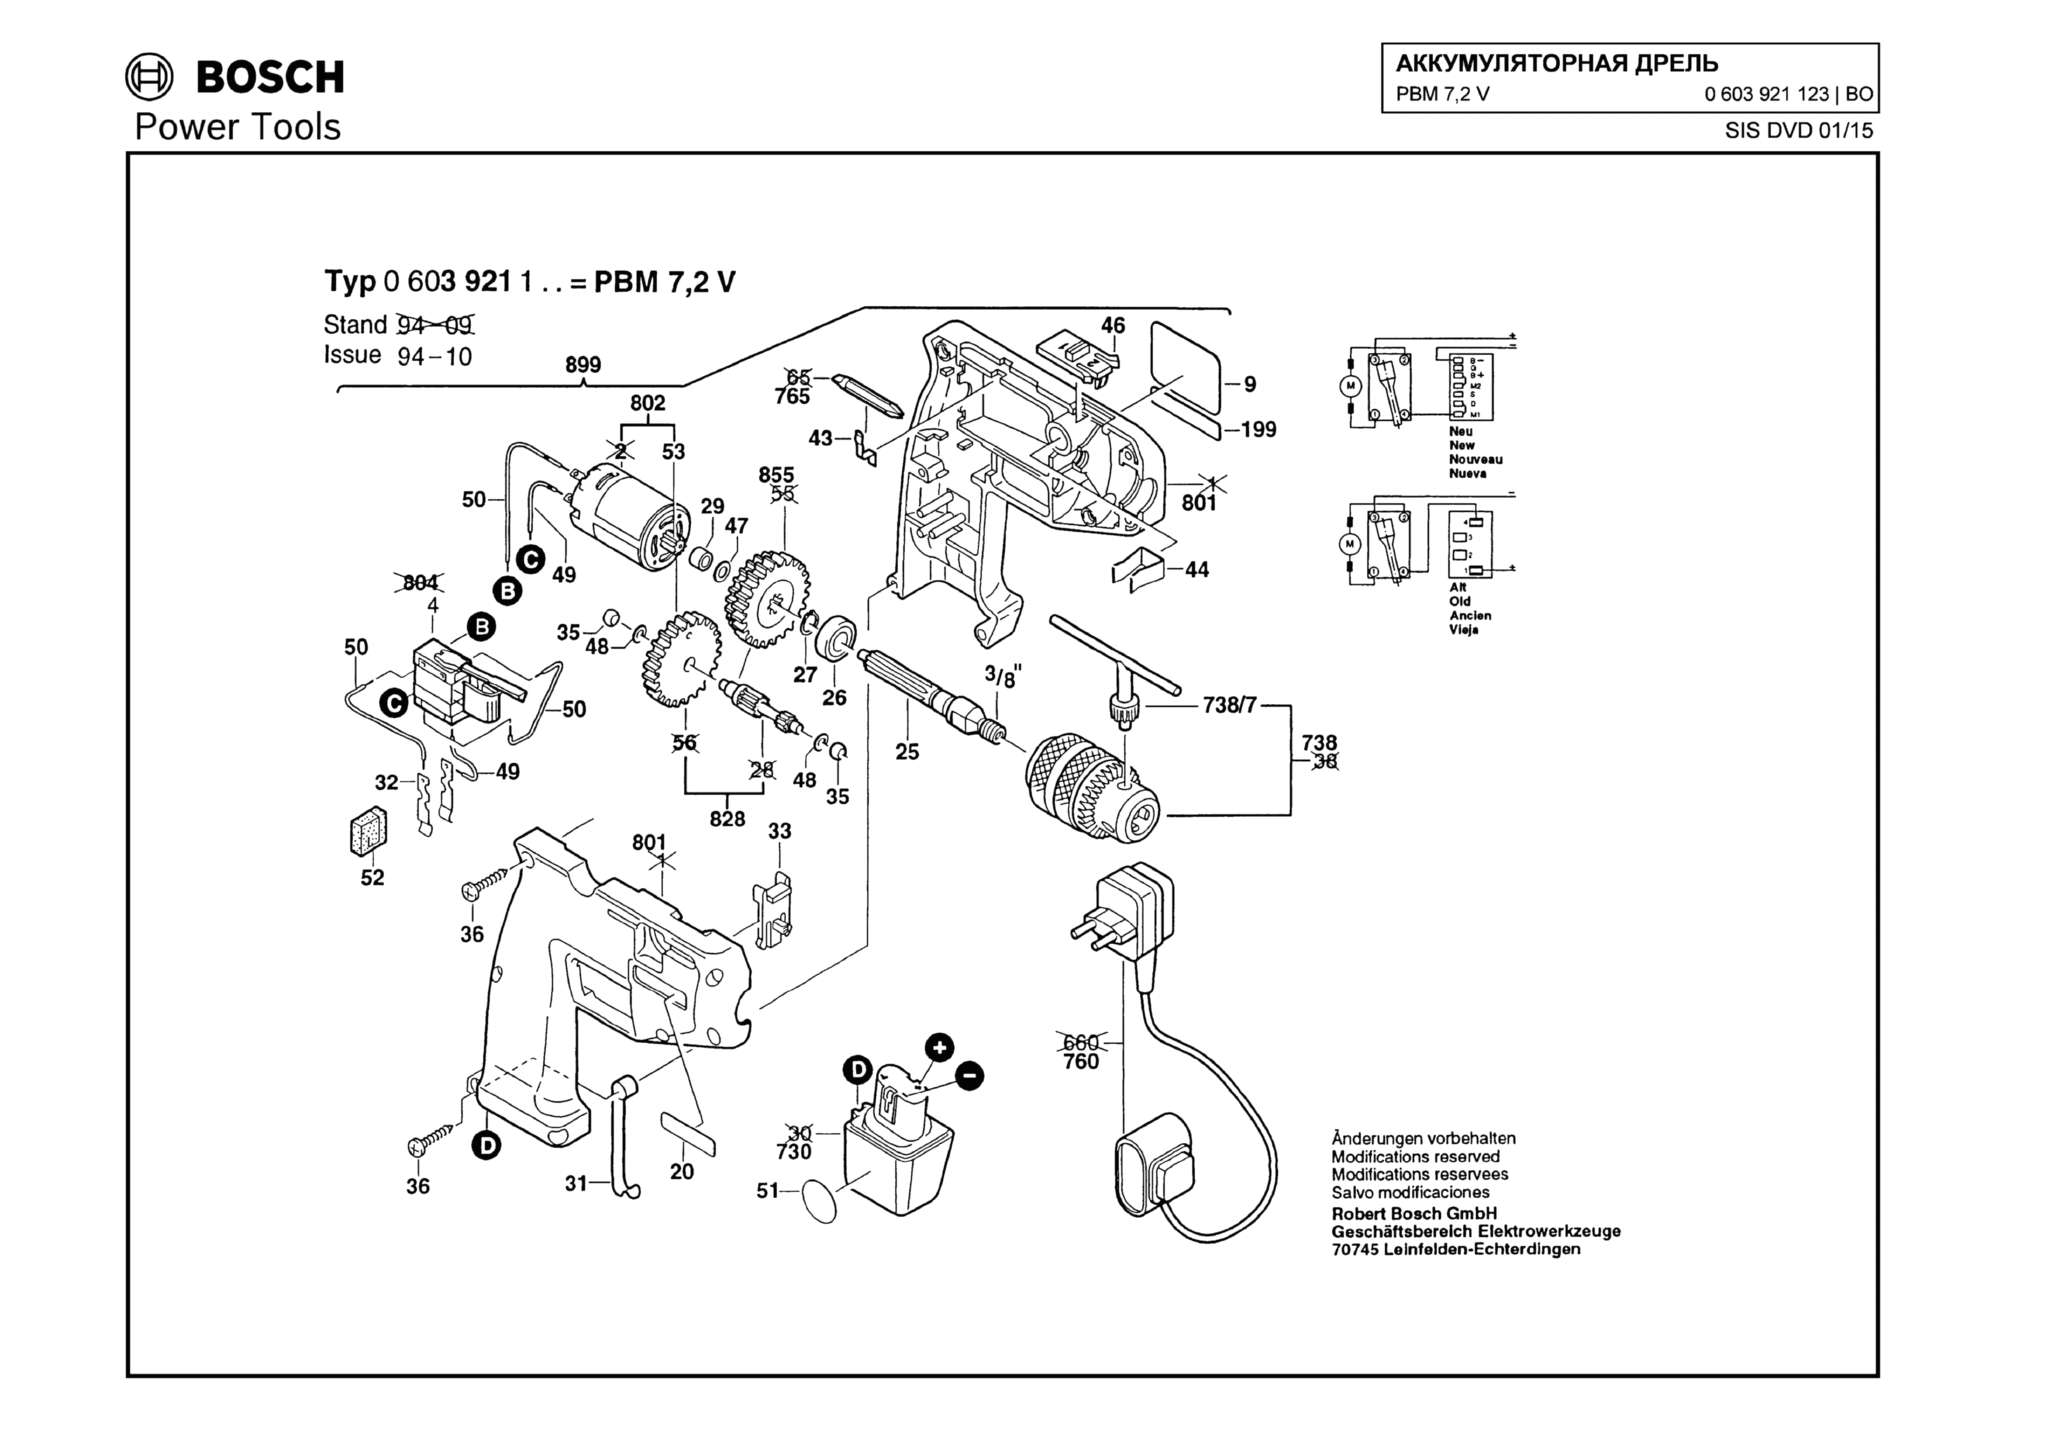 Запчасти, схема и деталировка Bosch PBM 7,2 V (ТИП 0603921123)